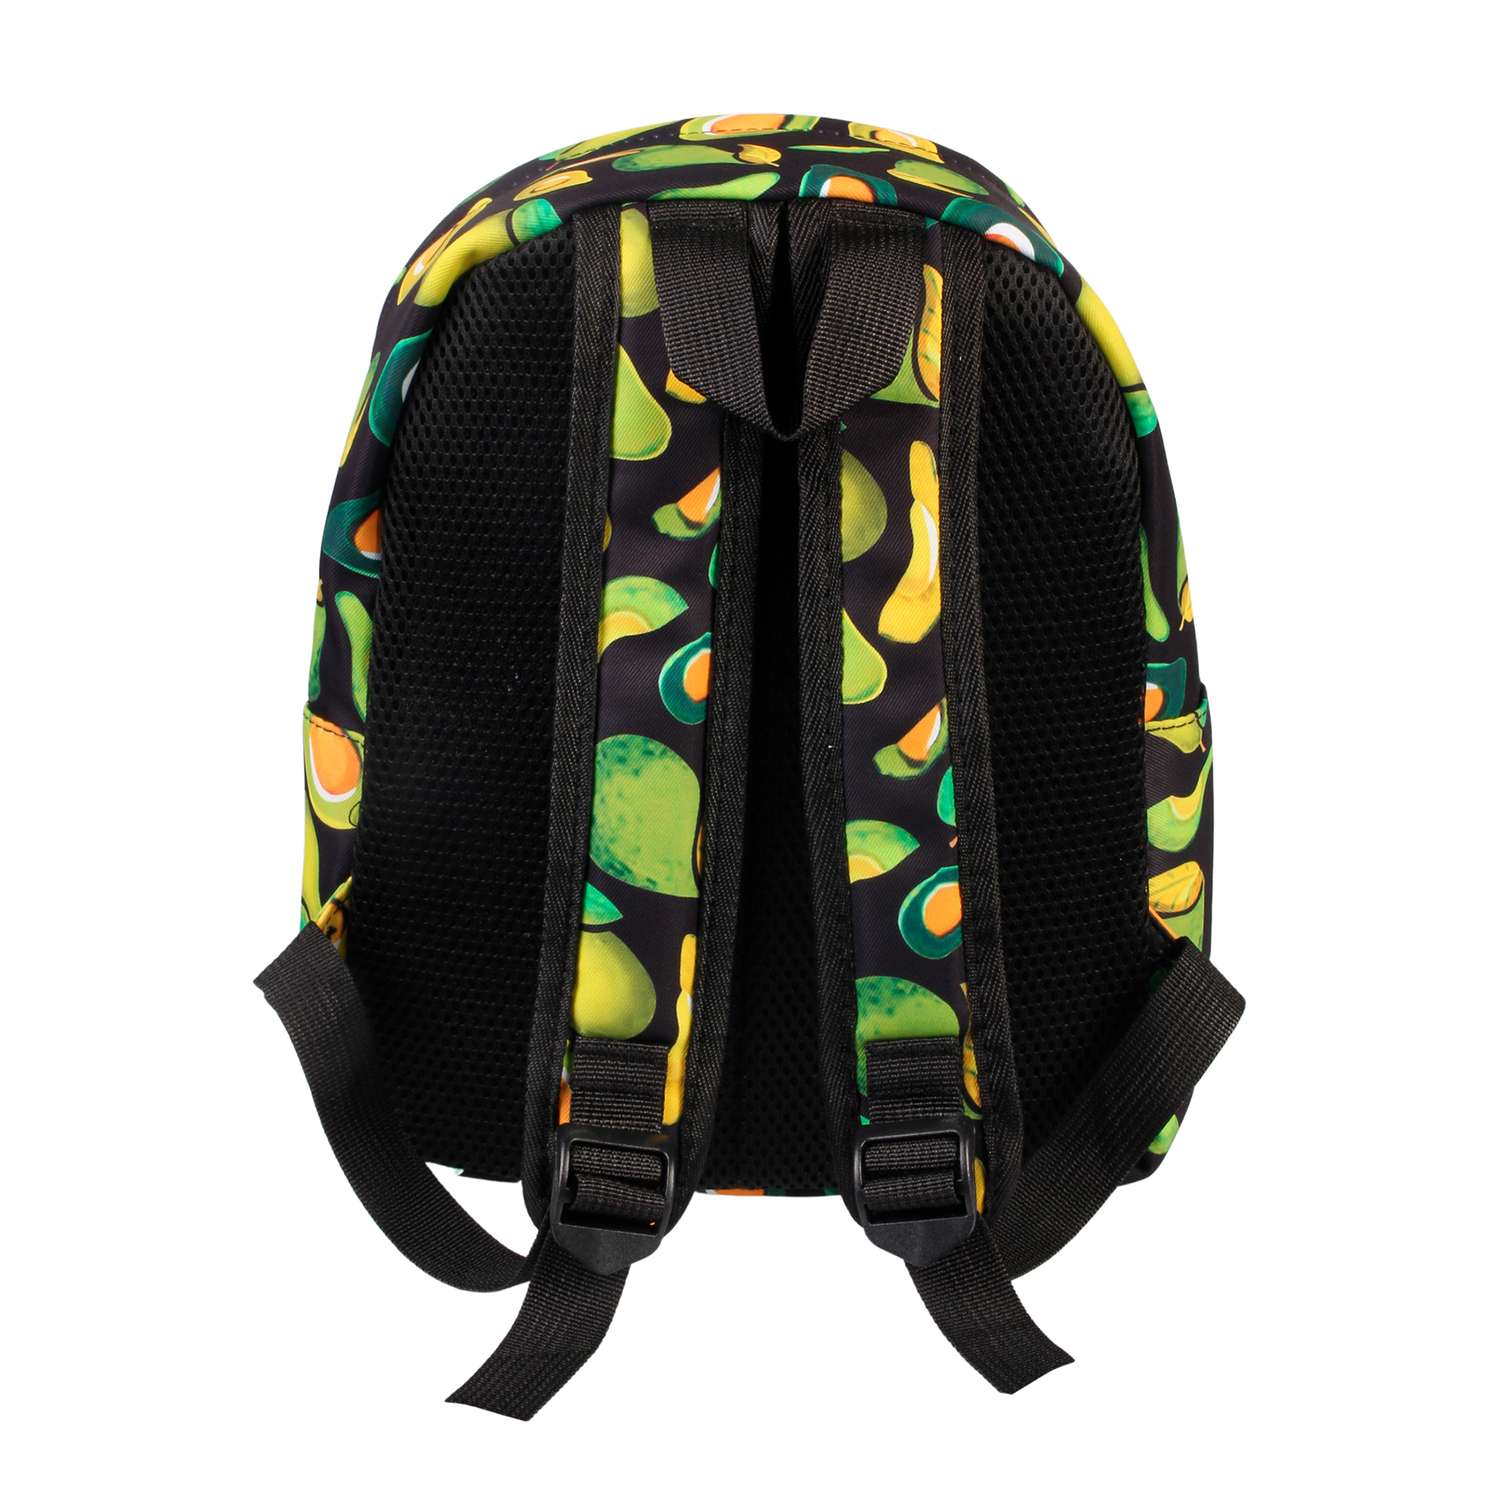 Рюкзак Little Mania черный Авокадо желто-зеленый - фото 3